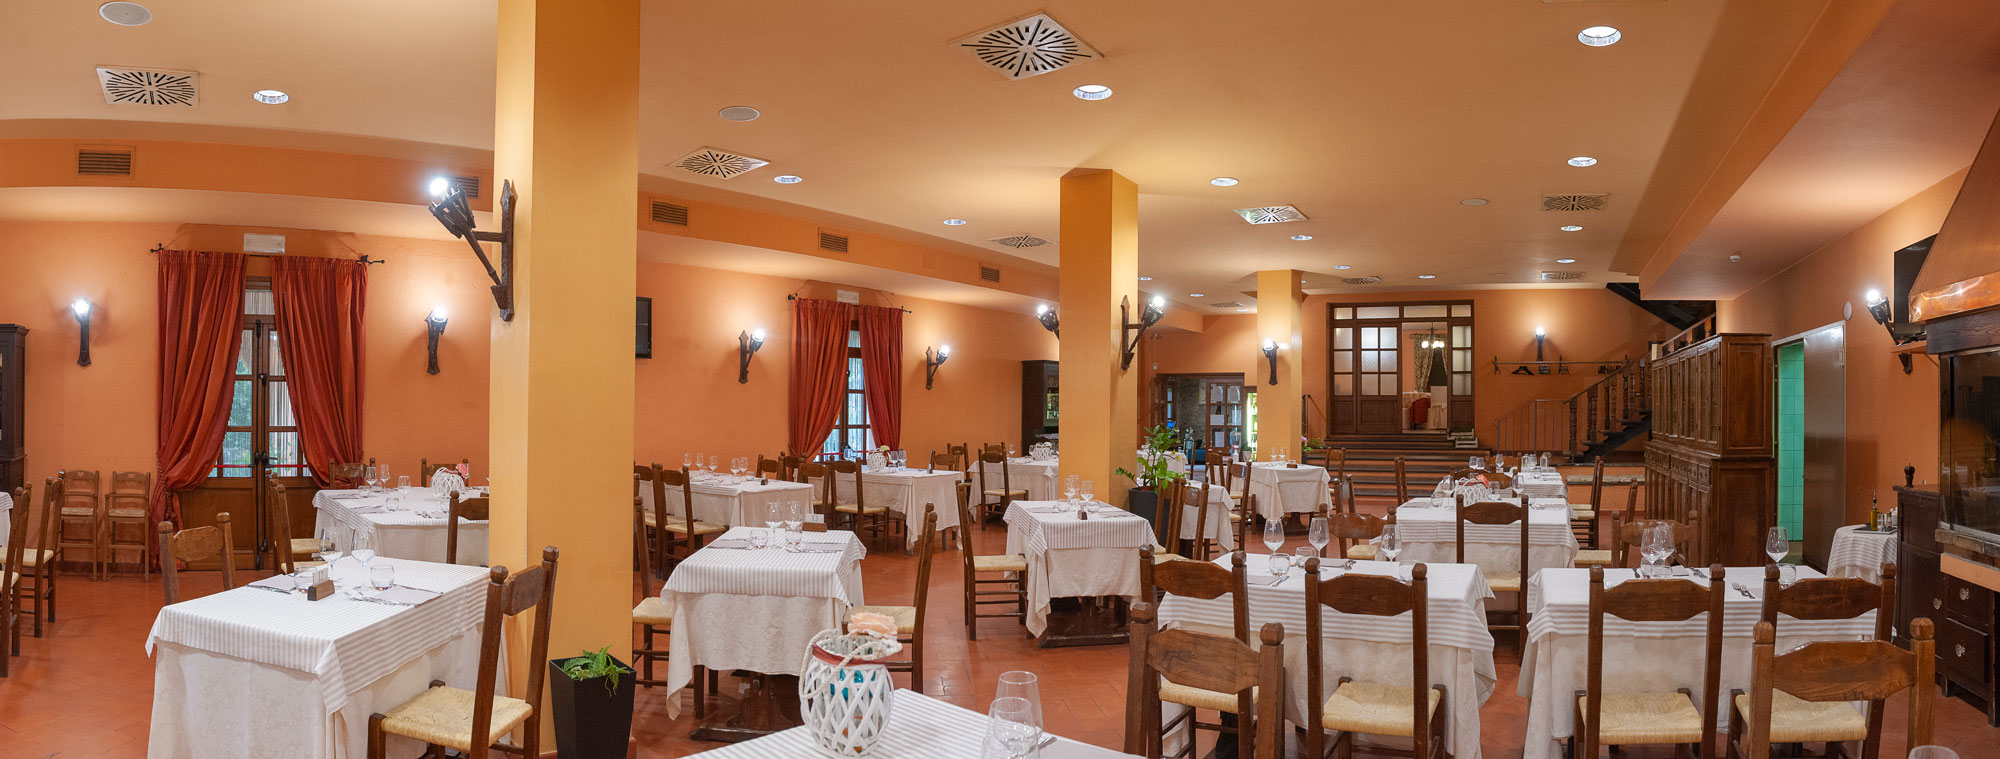 La Fattoria Spoleto: sala da pranzo – Ristorante – Pizzeria – Albergo